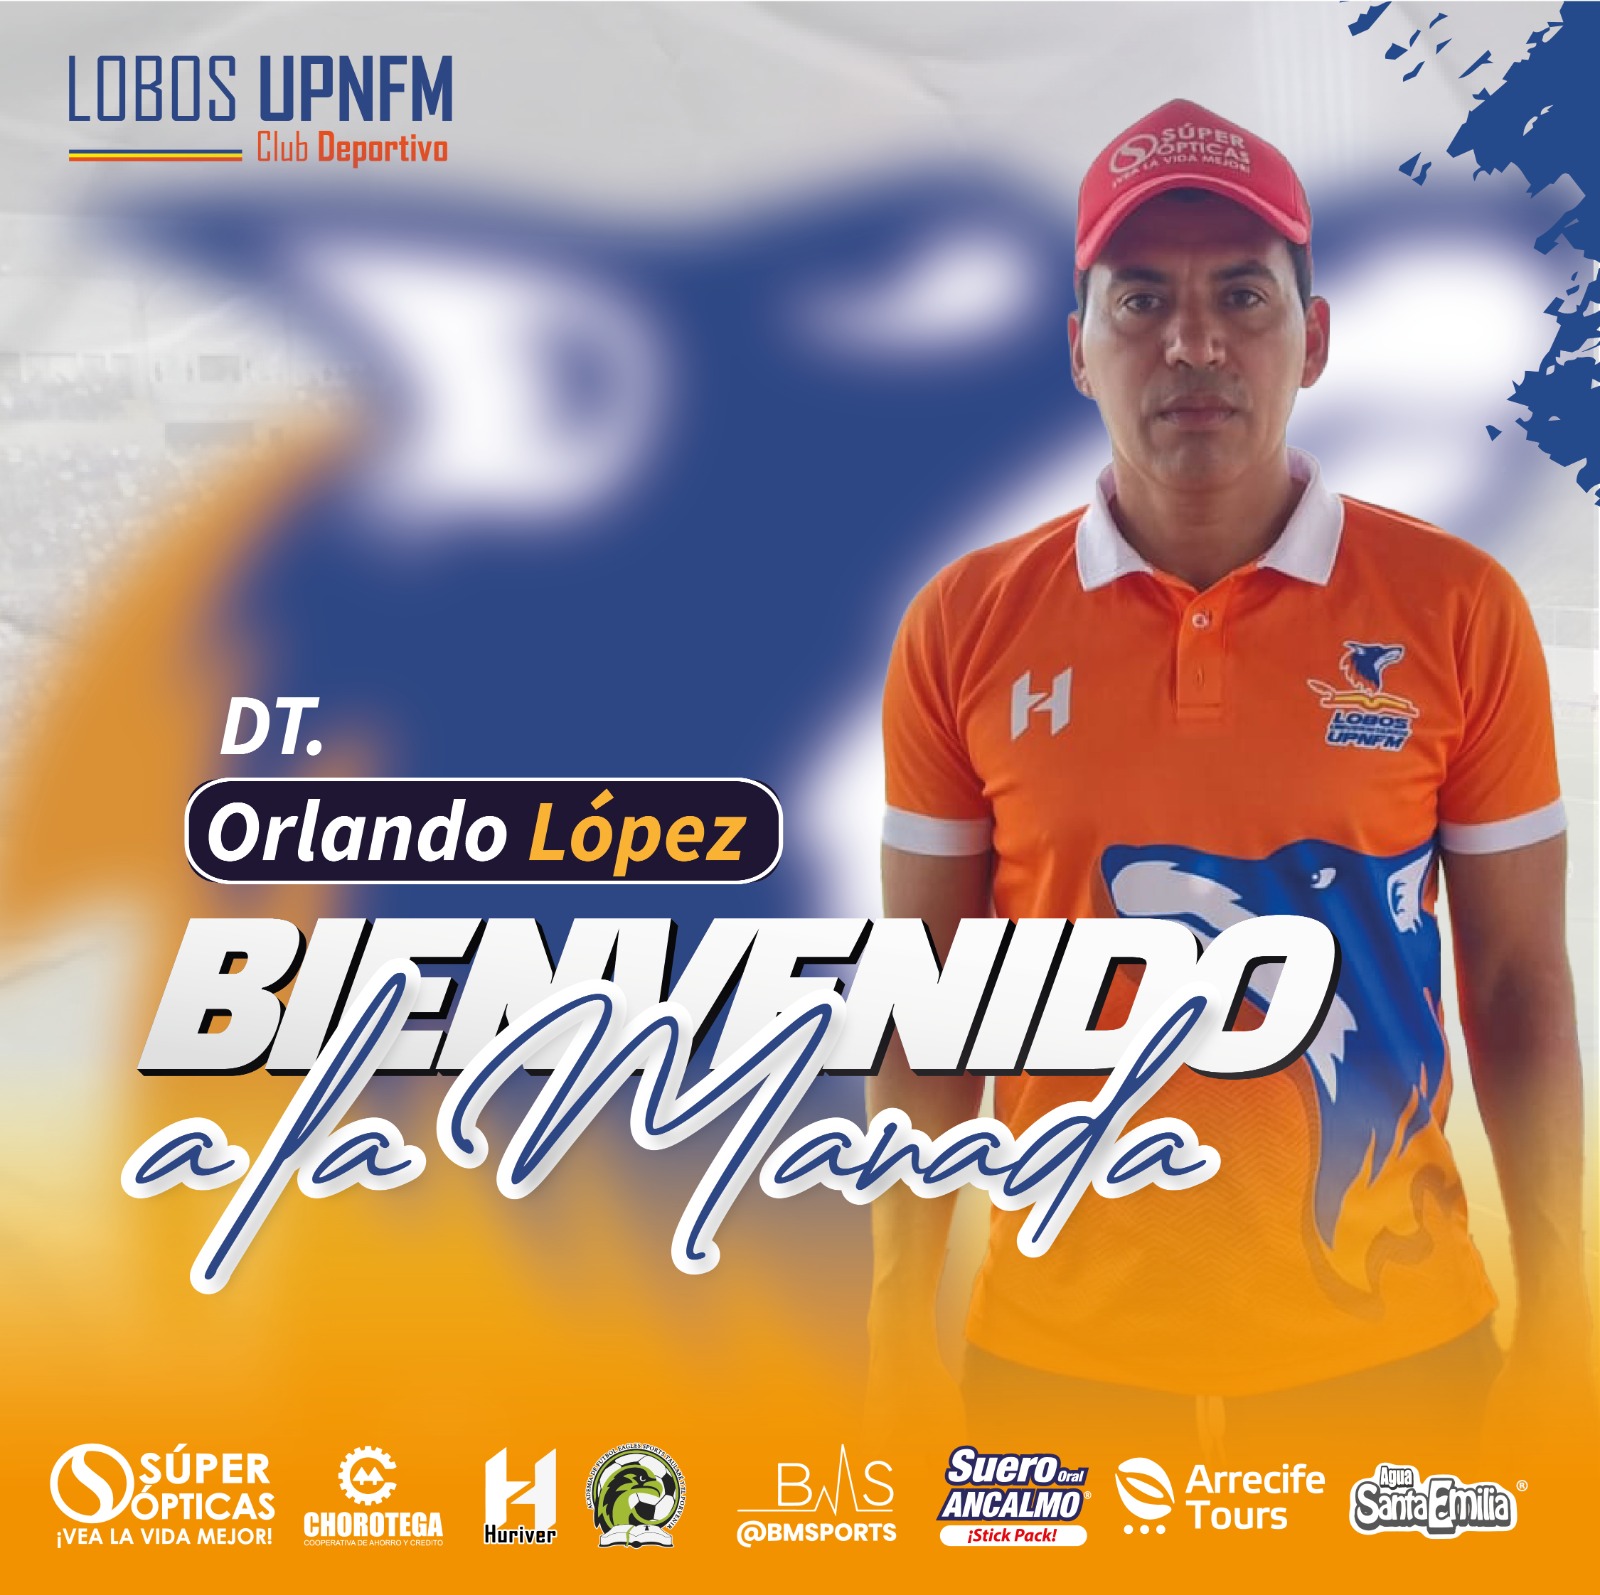 Lobos UPNFM le da la bienvenida al nuevo entrenador, Orlando López.